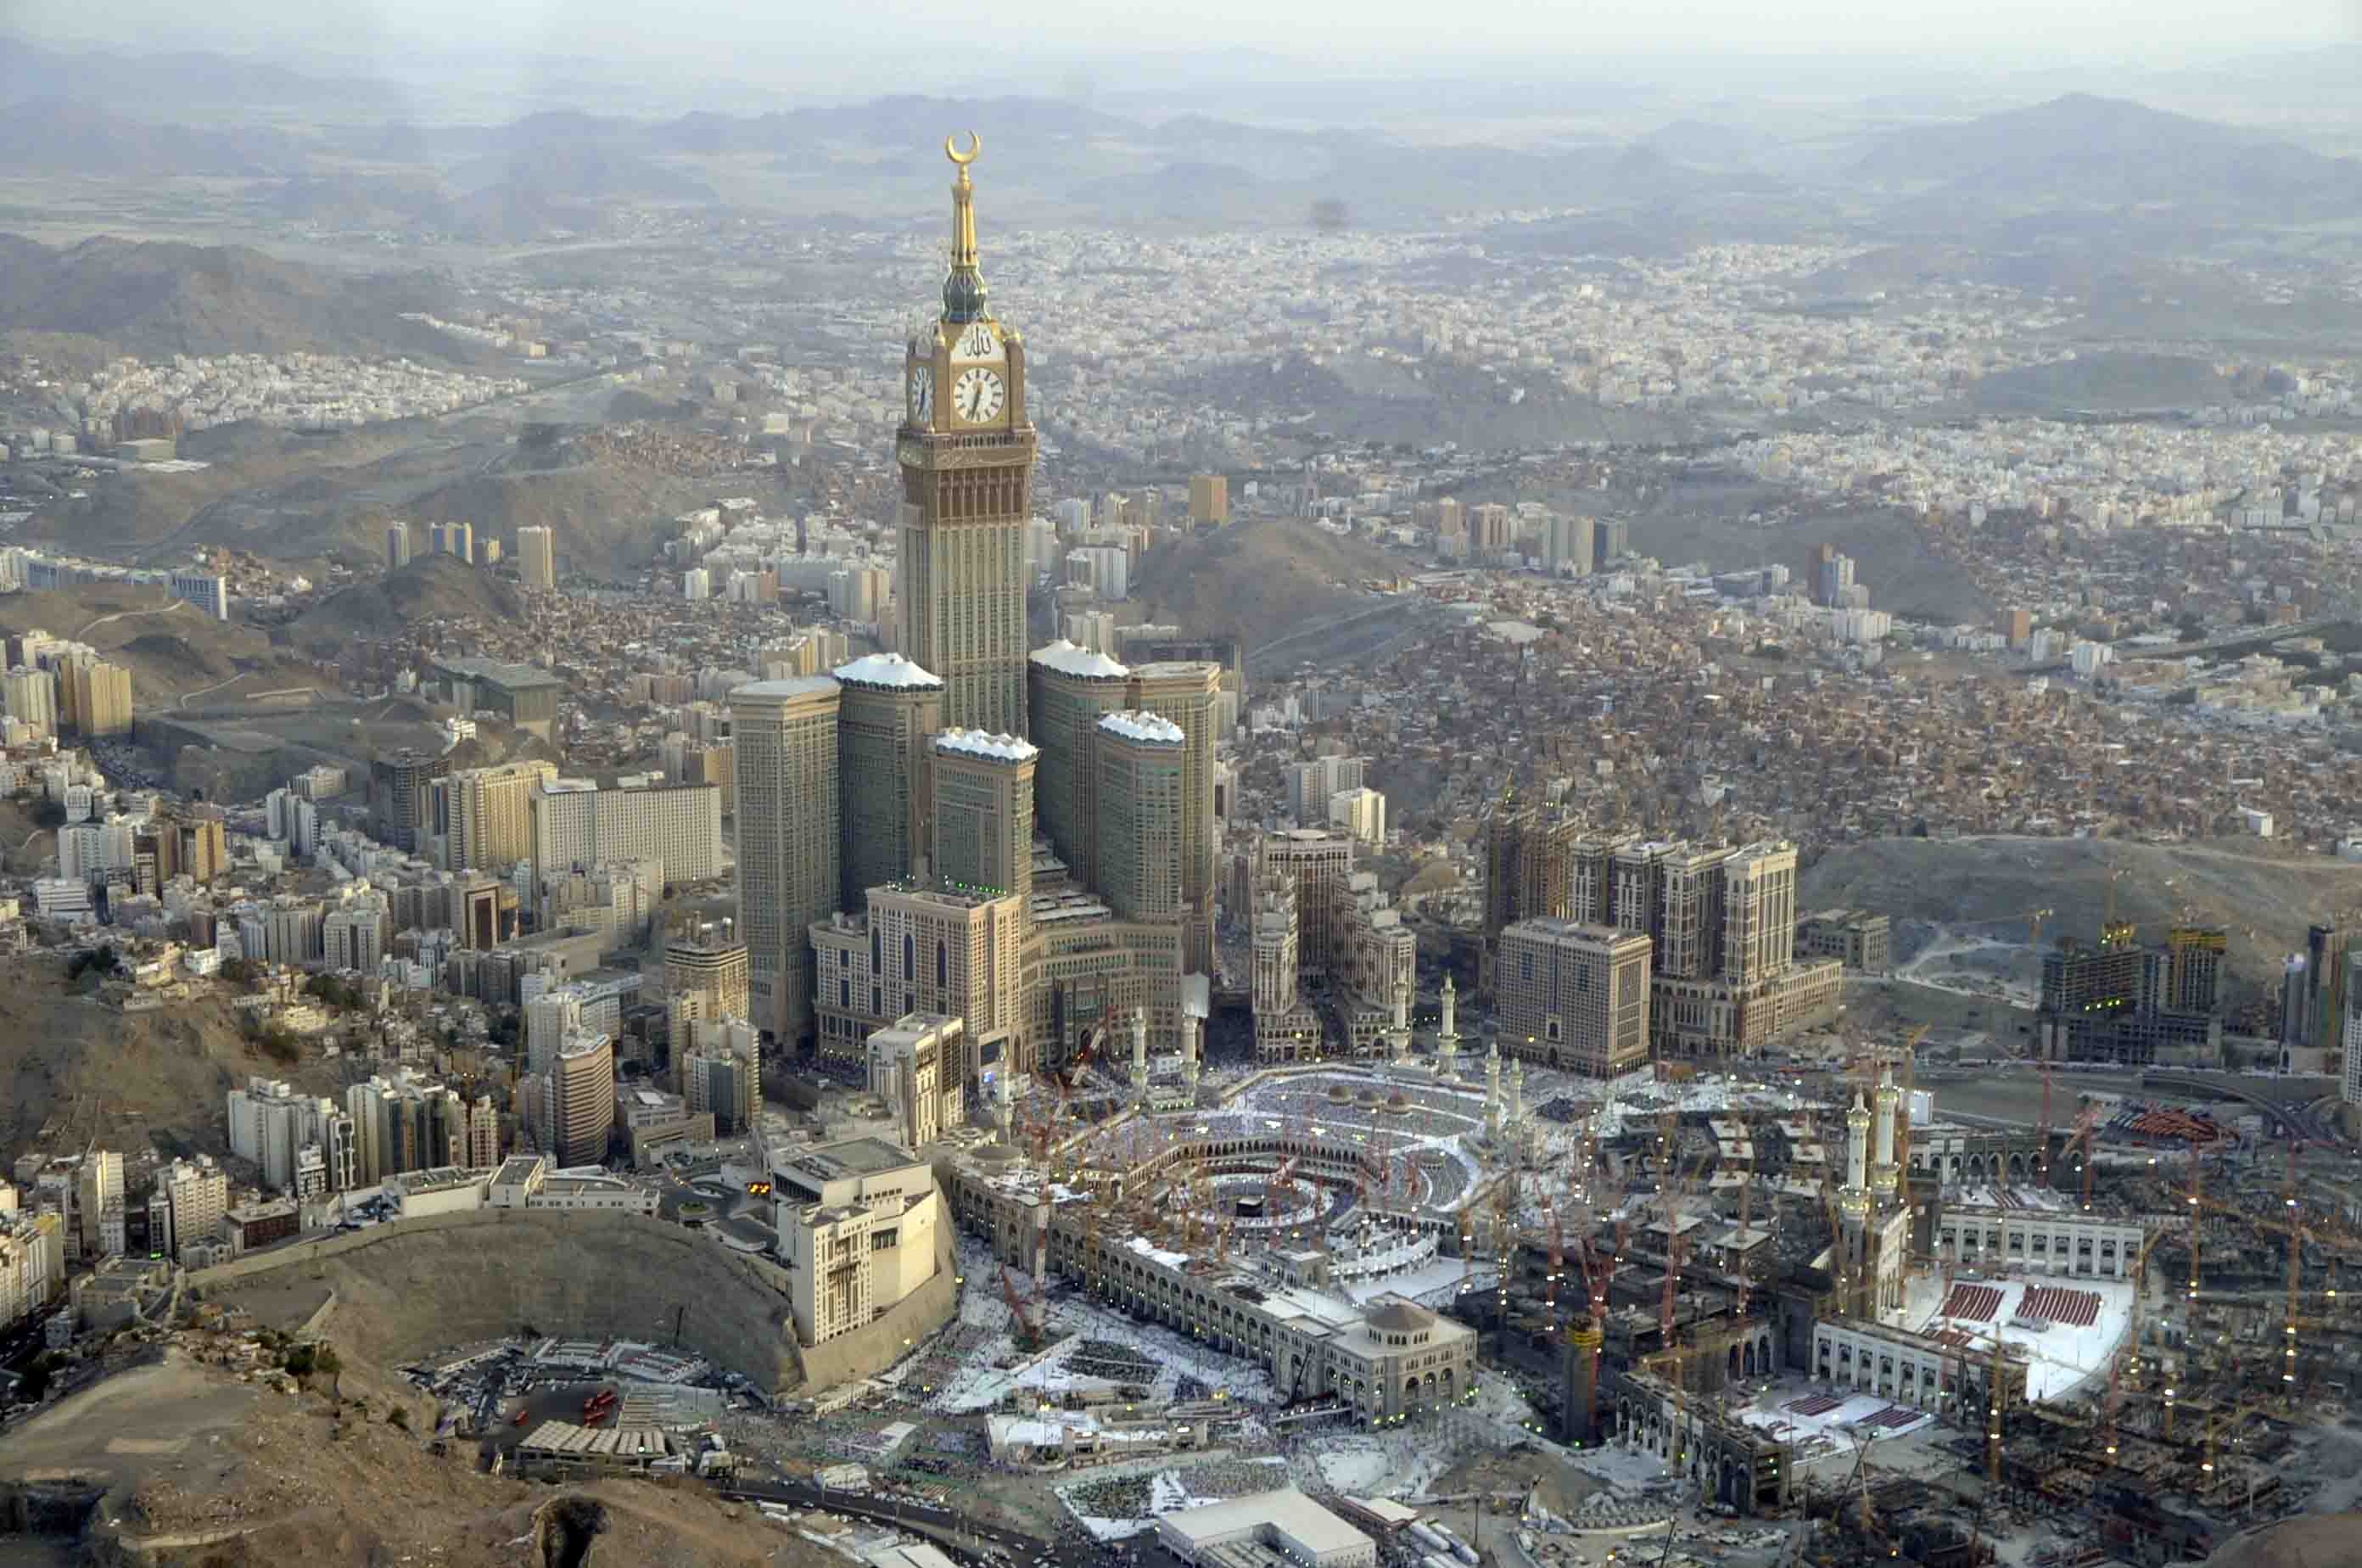 Makkah-Abraj-al-Bayt-Towers-August-2013.jpg